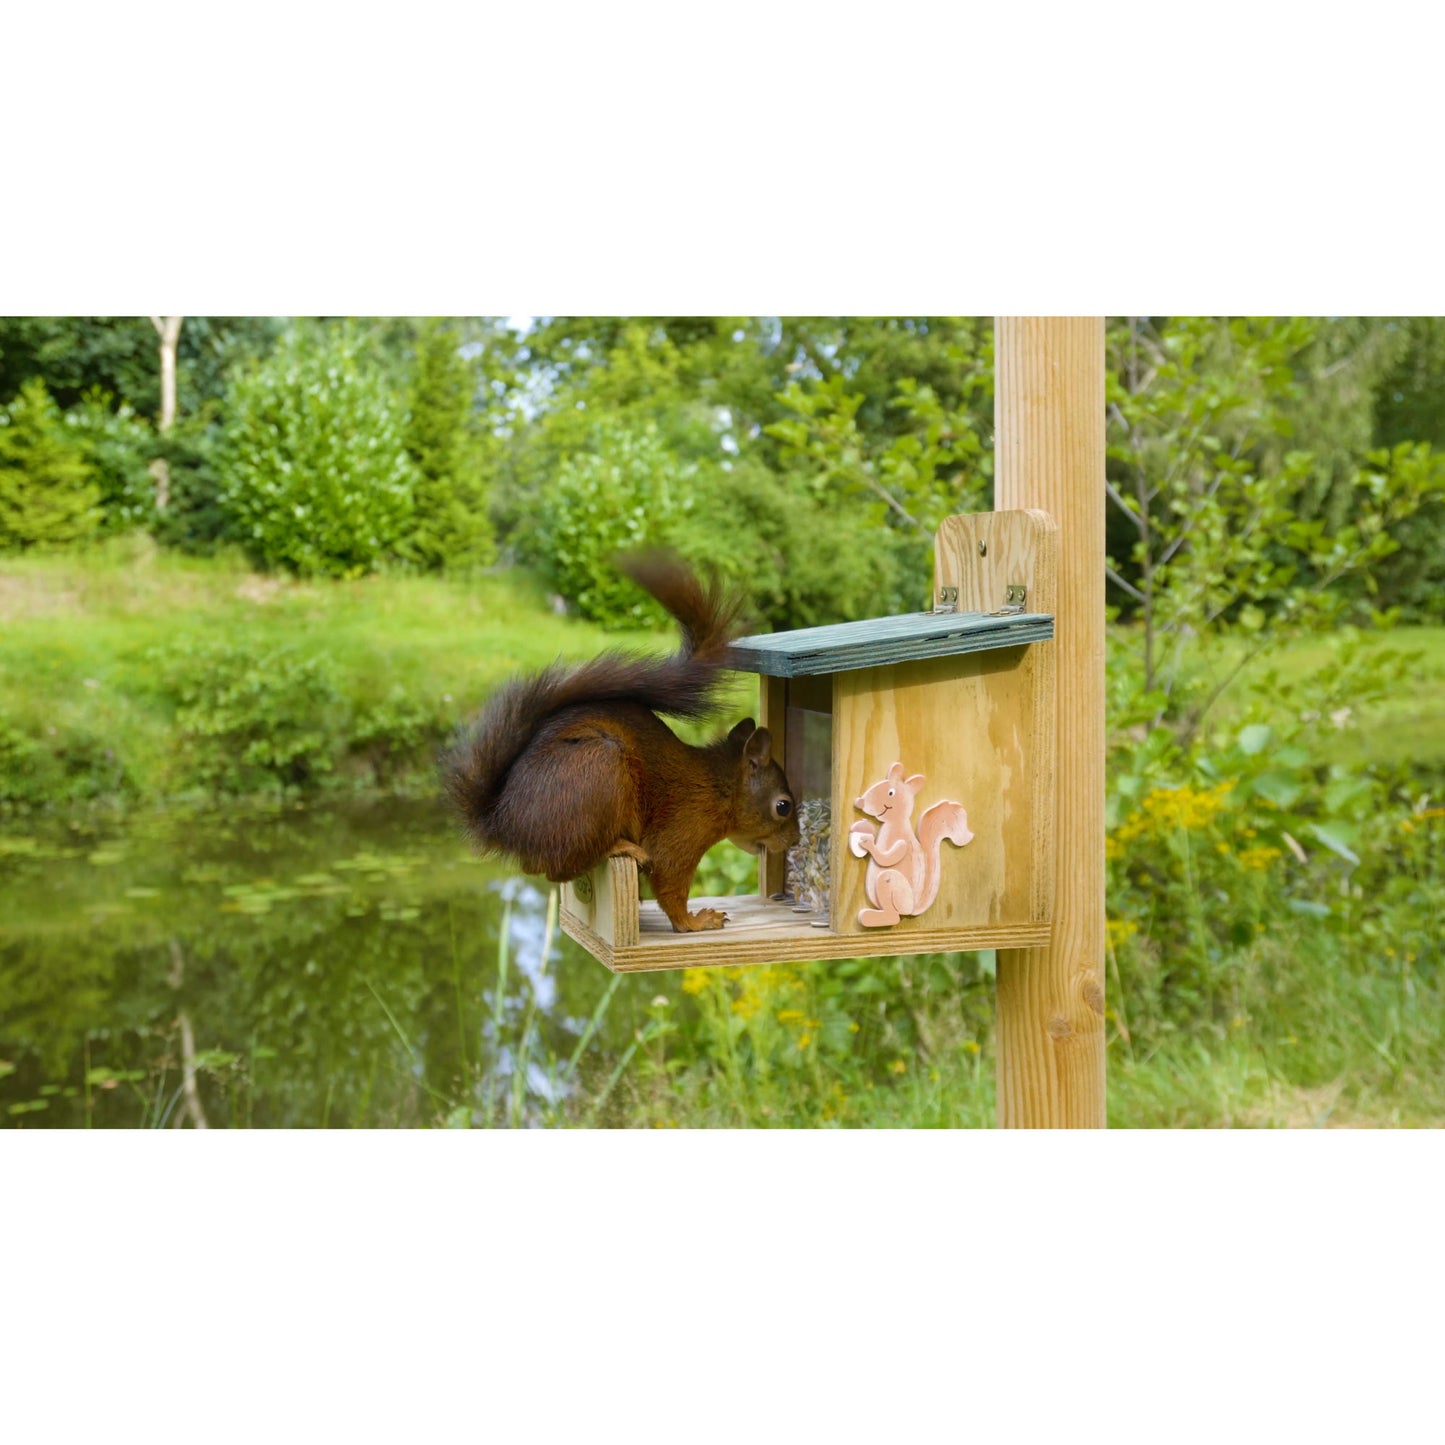 Art. 22219e - Eichhörnchen-Futterstation mit Futtersilo | Grün